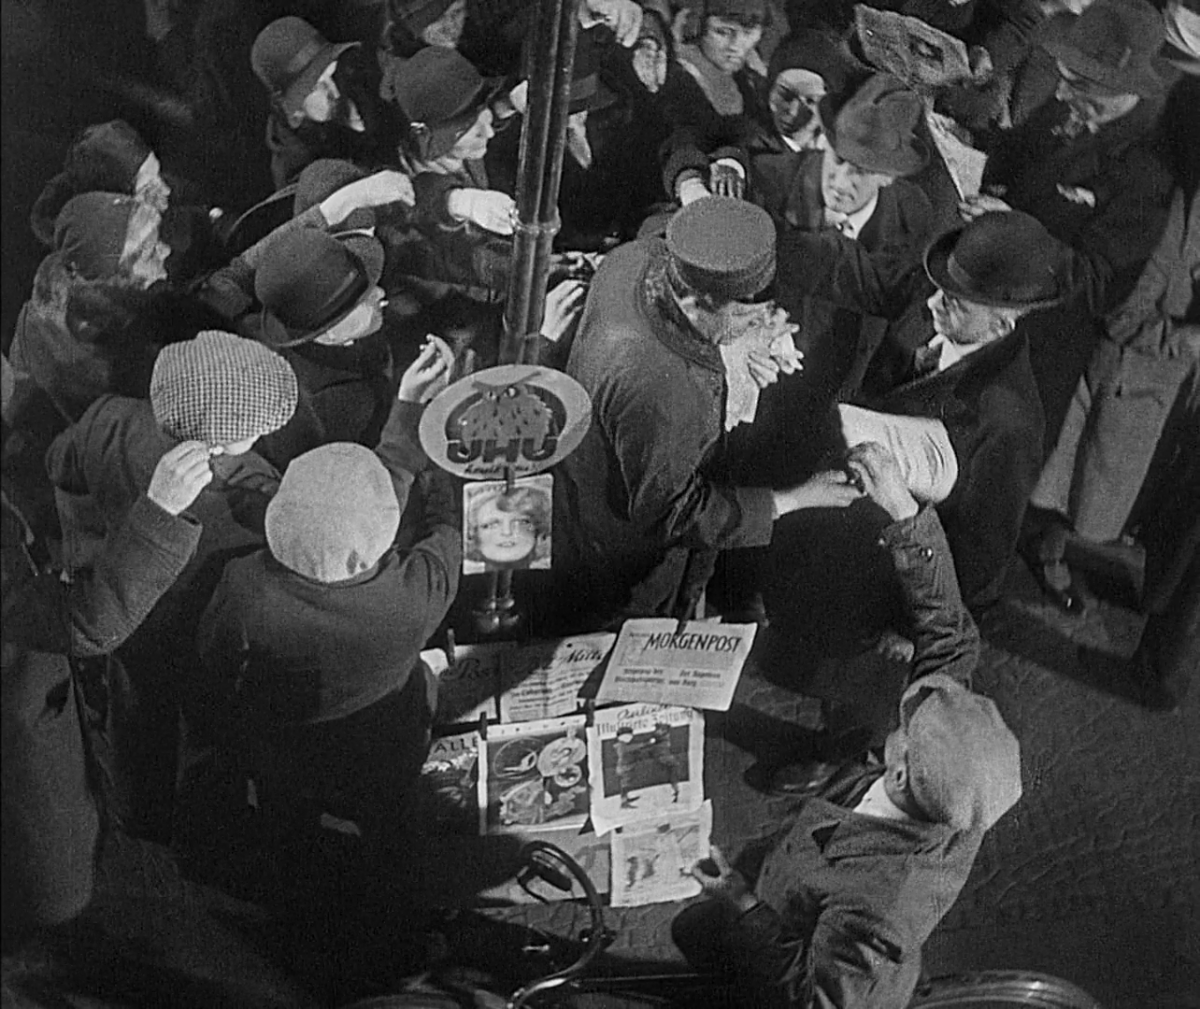 Sale of newspapers in M - Eine Stadt sucht einen Mörder (1931)